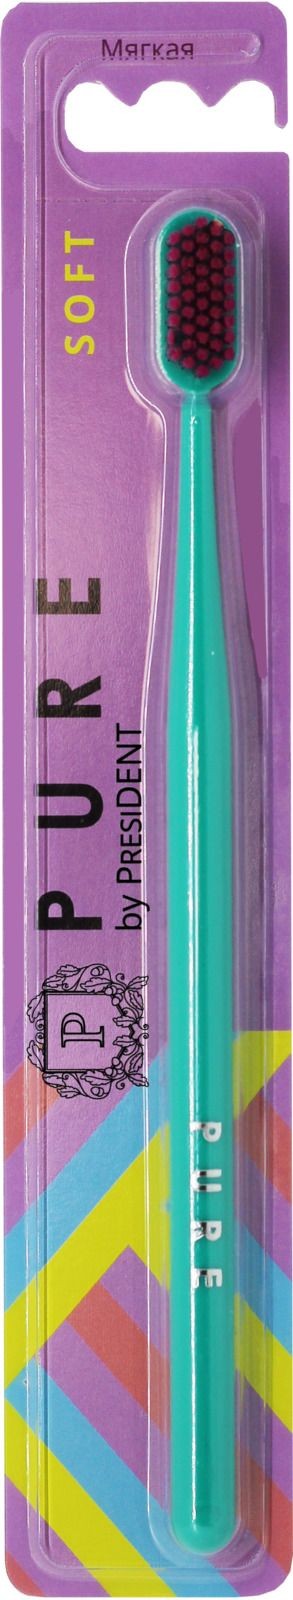 Зубная щетка president pure средняя филипс соникеа электрическая зубная щетка насадки купить